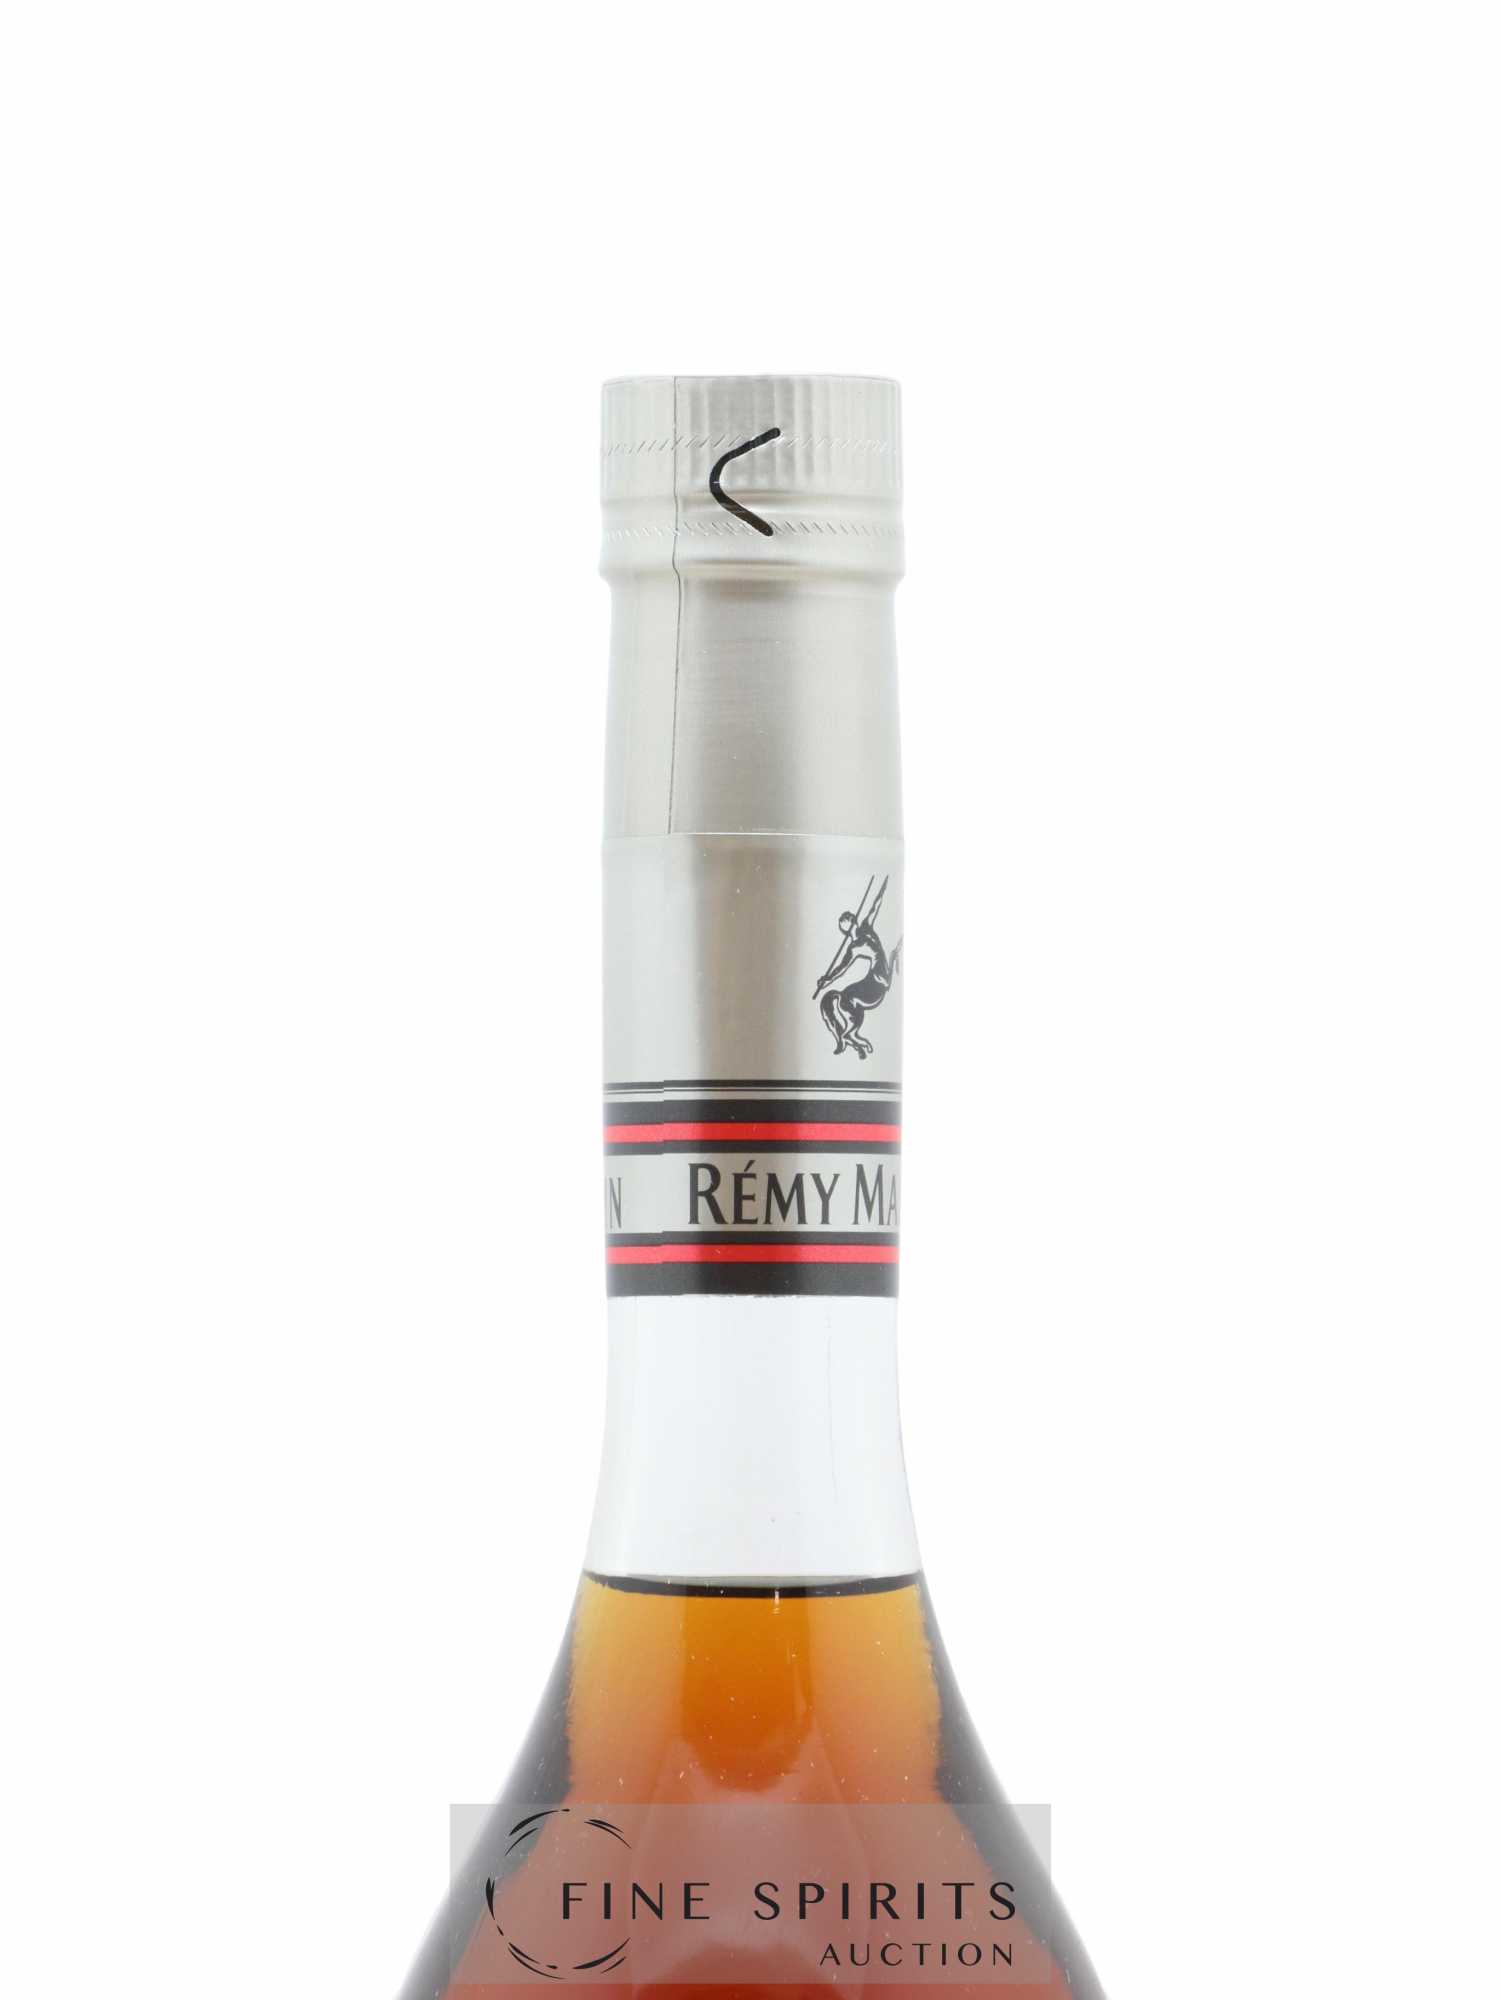 Remy Martin VSOP Mature Cask Finish Cognac 700ml Bottle